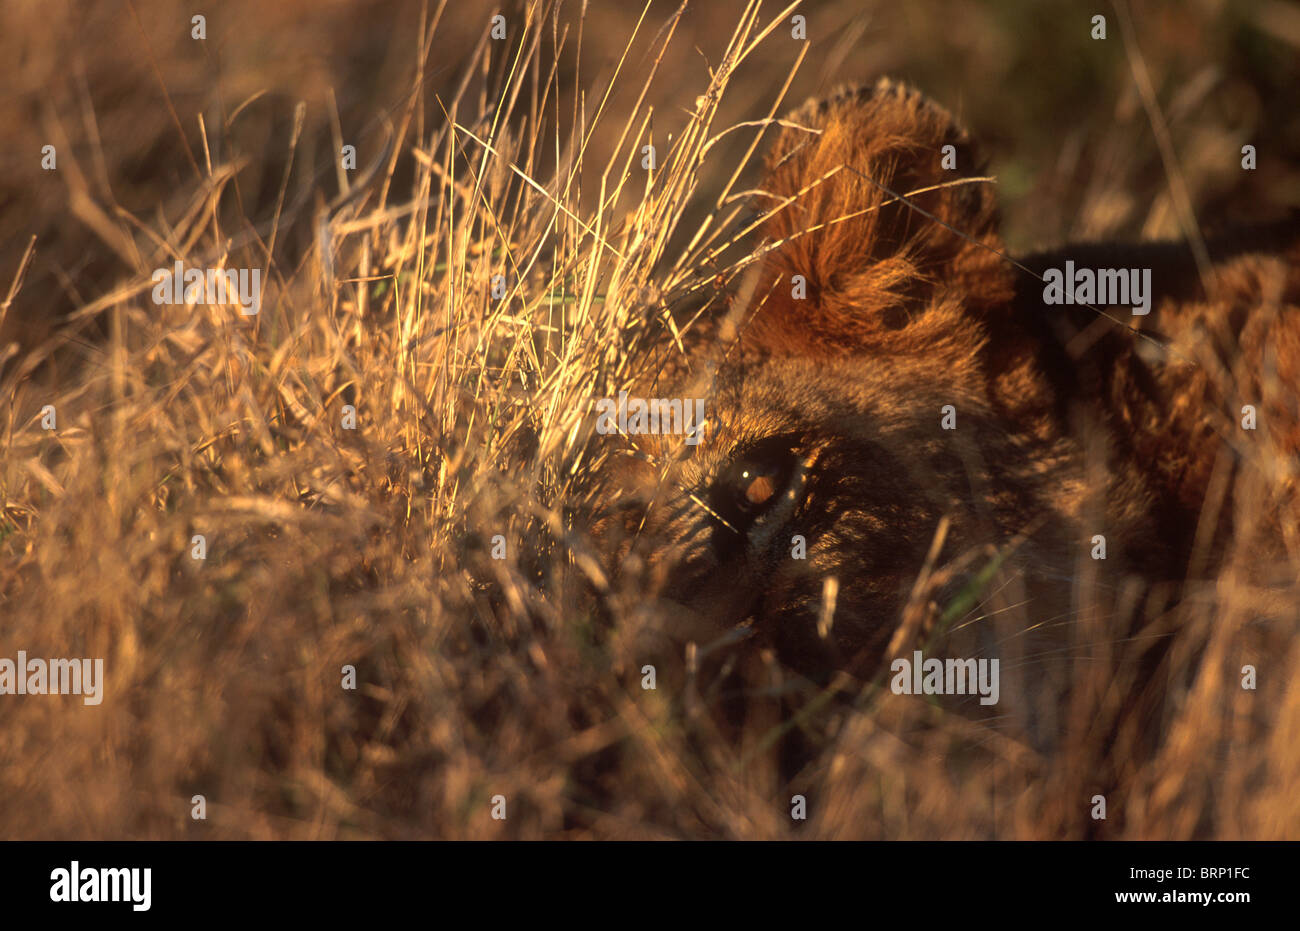 Un leone sdraiato in erba è molto ben nascosto e difficile da vedere Foto Stock